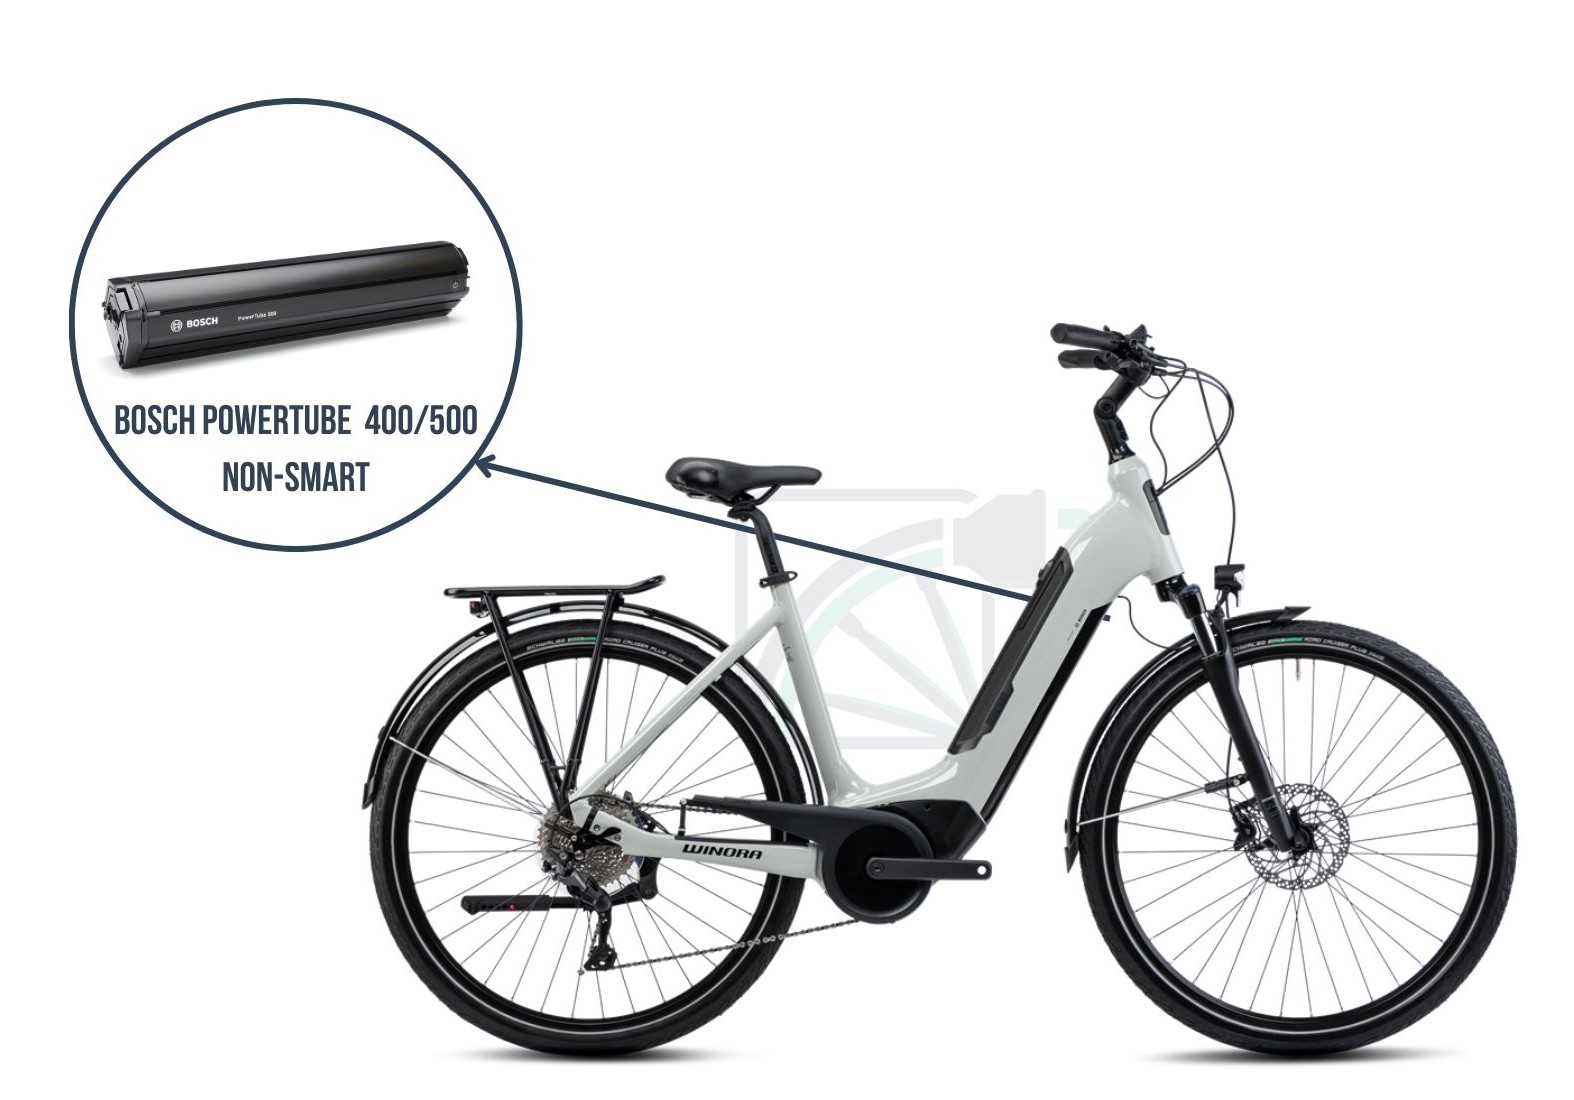 Sur cette image, la Winora Sinus Tria 10 est représentée. La batterie associée à ce vélo est mise en avant, savoir la Bosch Powertube 400/500 non-SMART.